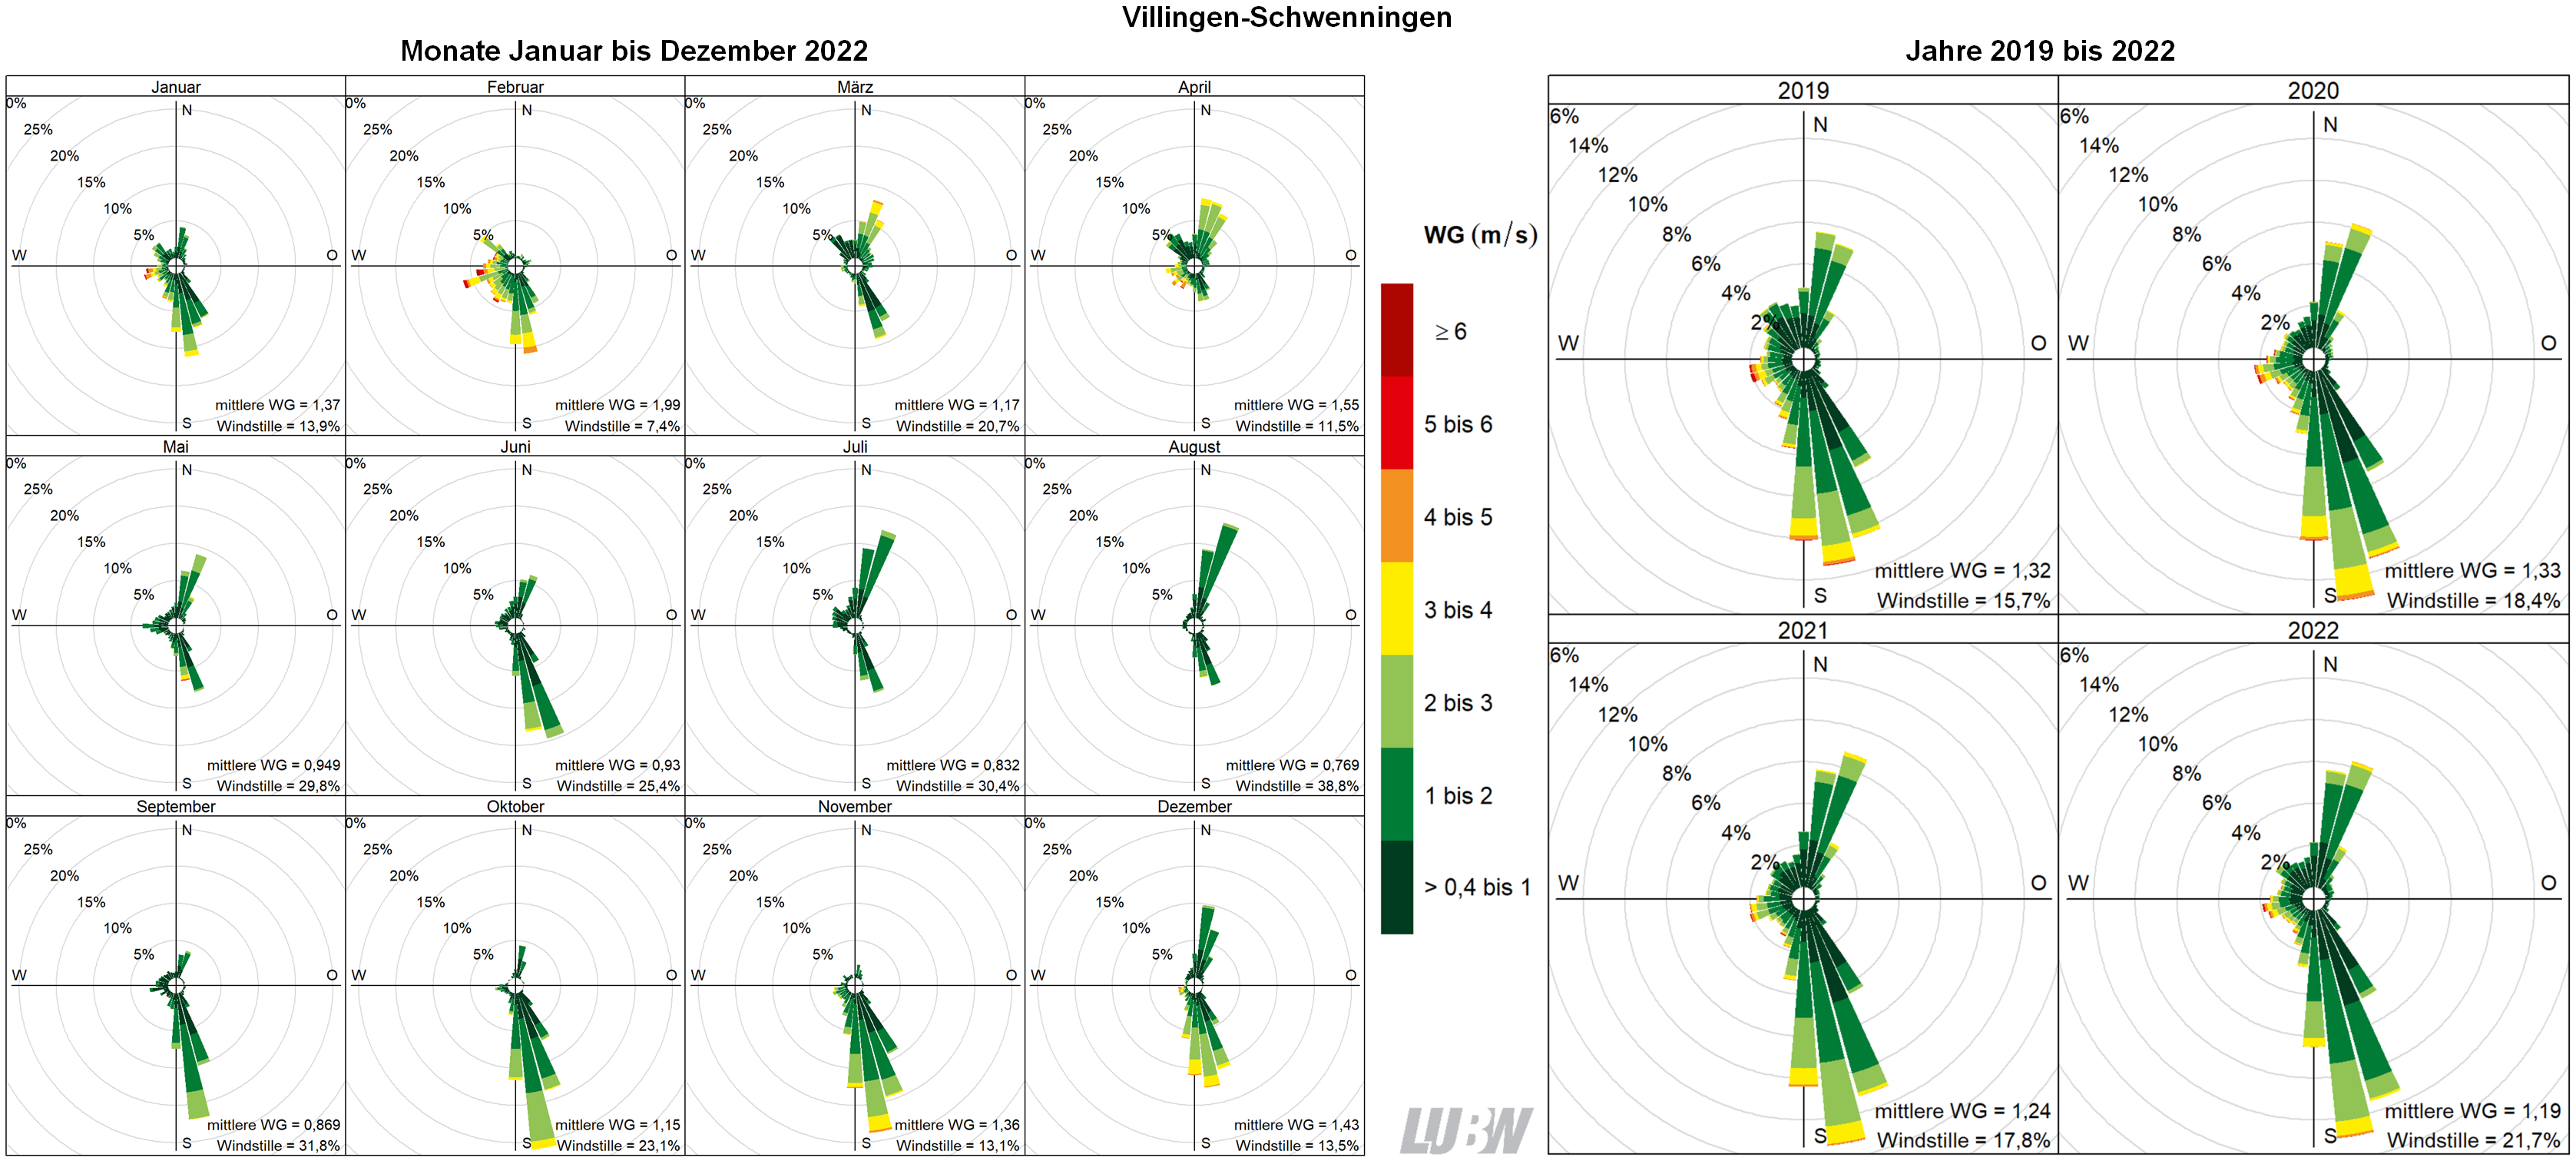  Mitttlere Windverteilung als Windrosen für die Monate Januar bis Dezember 2022 (linke Abbildung) sowie für die Jahre 2019 bis 2022 (rechte Abbildung) für den Standort Villingen-Schwenningen. Weitere Informationen im umliegenden Text. 